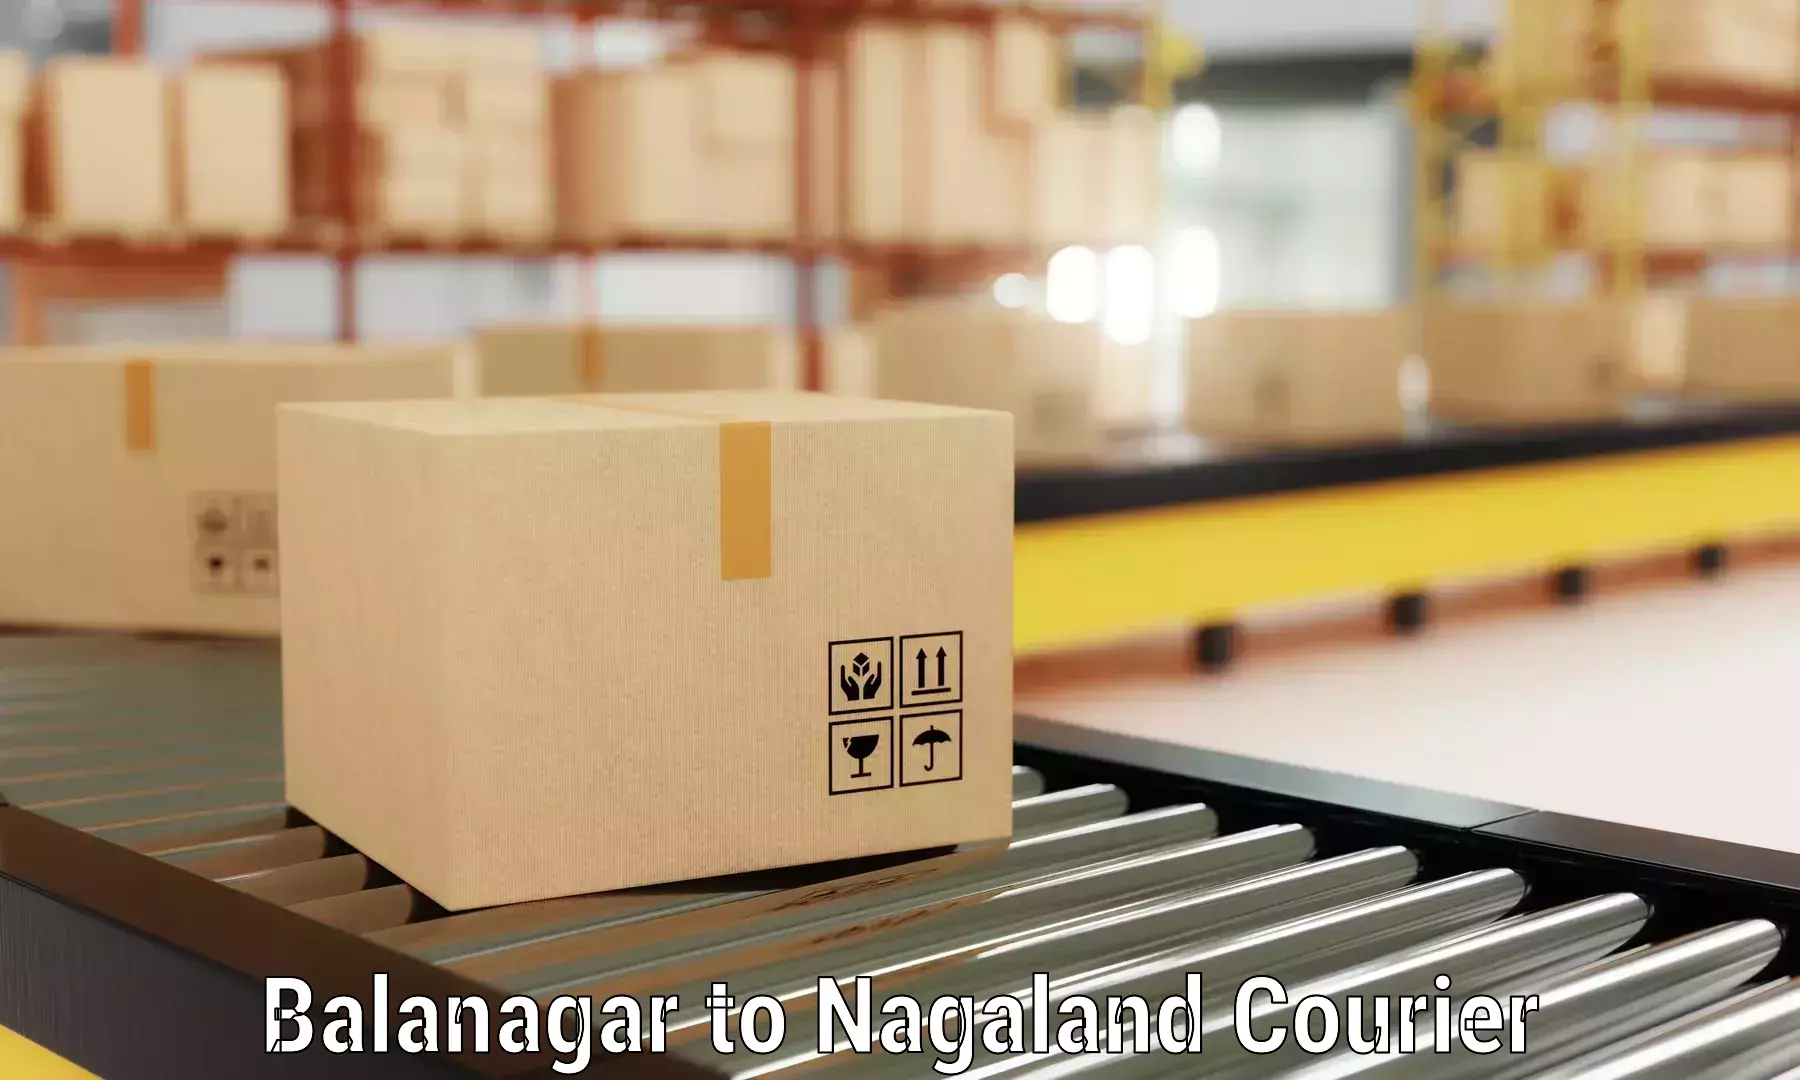 Efficient packing and moving Balanagar to Nagaland